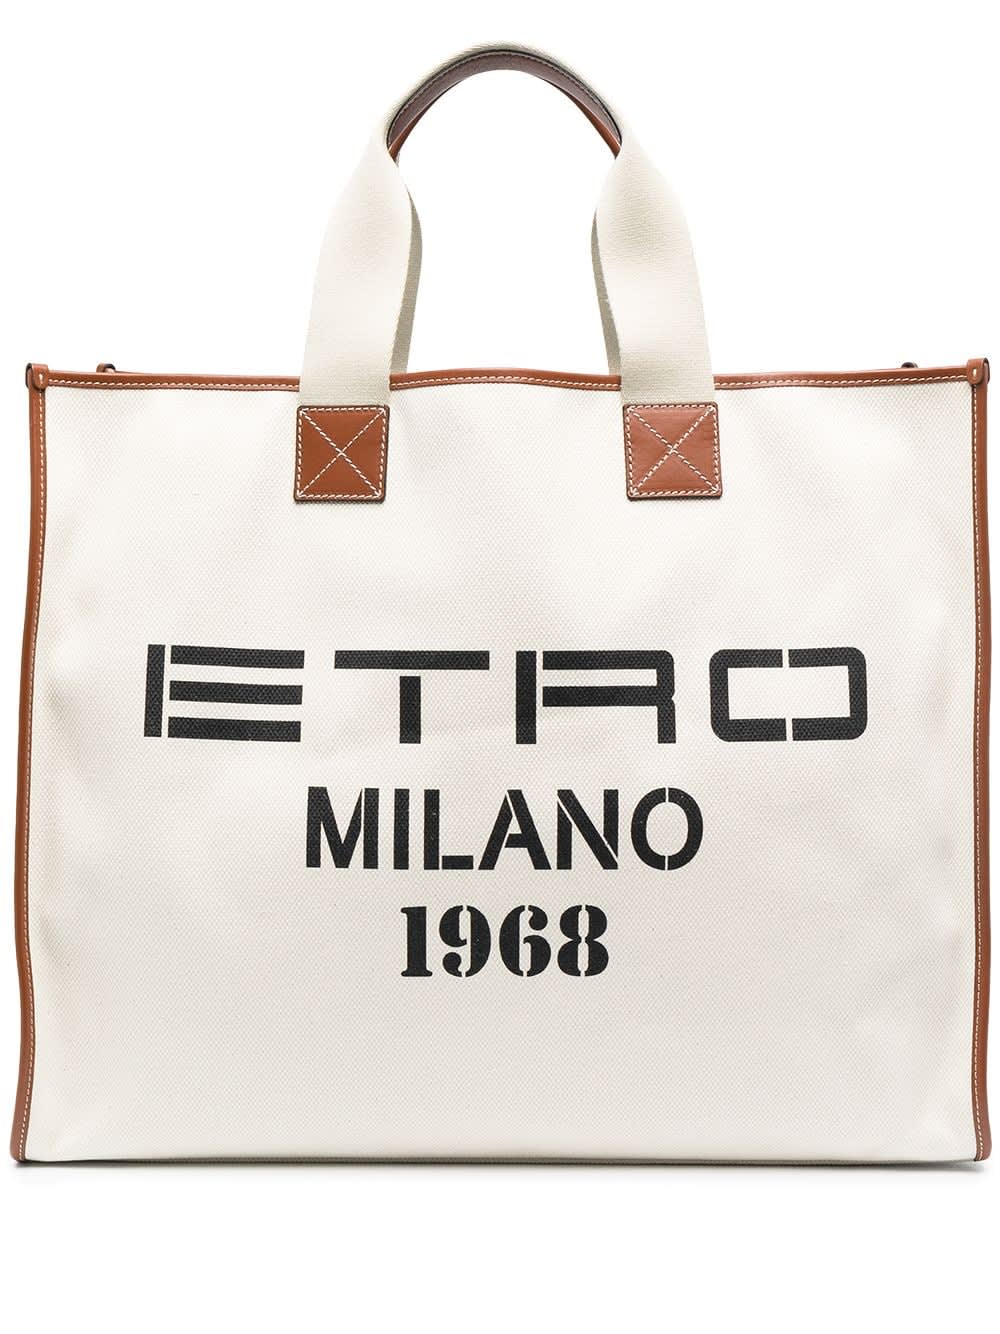 etro Milano 1968 Shopping Bag In Canvas